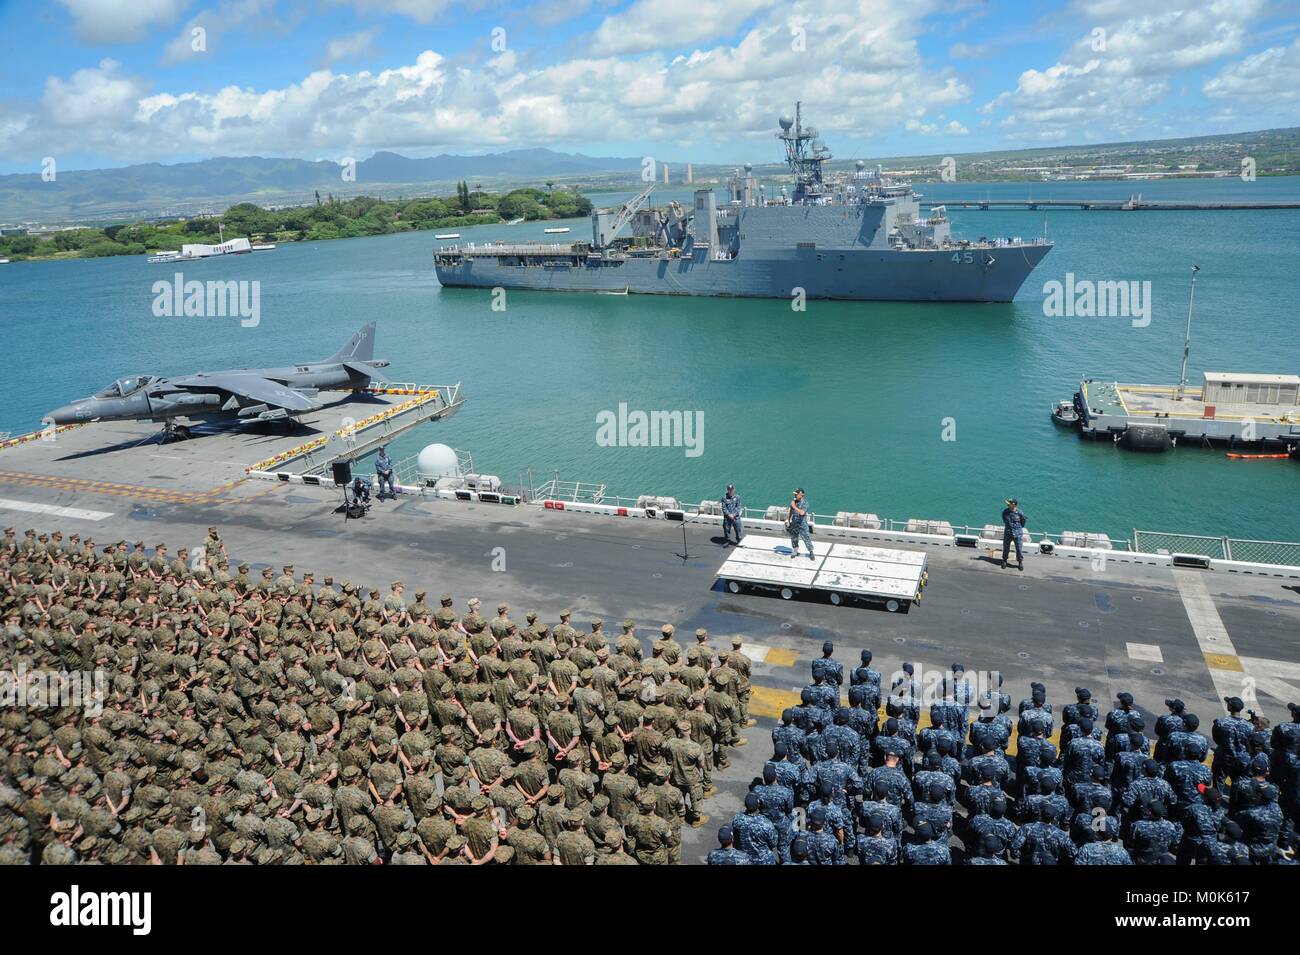 Us Pacific Command Commander Harry Harris spricht mit US-Soldaten, während die US-Marine Whidbey Island-Klasse amphibische Landung dock Schiff USS Comstock auf der gemeinsamen Basis Pearl Harbor-Hickam Mai 1, 2017 in Pearl Harbor, Hawaii. Stockfoto